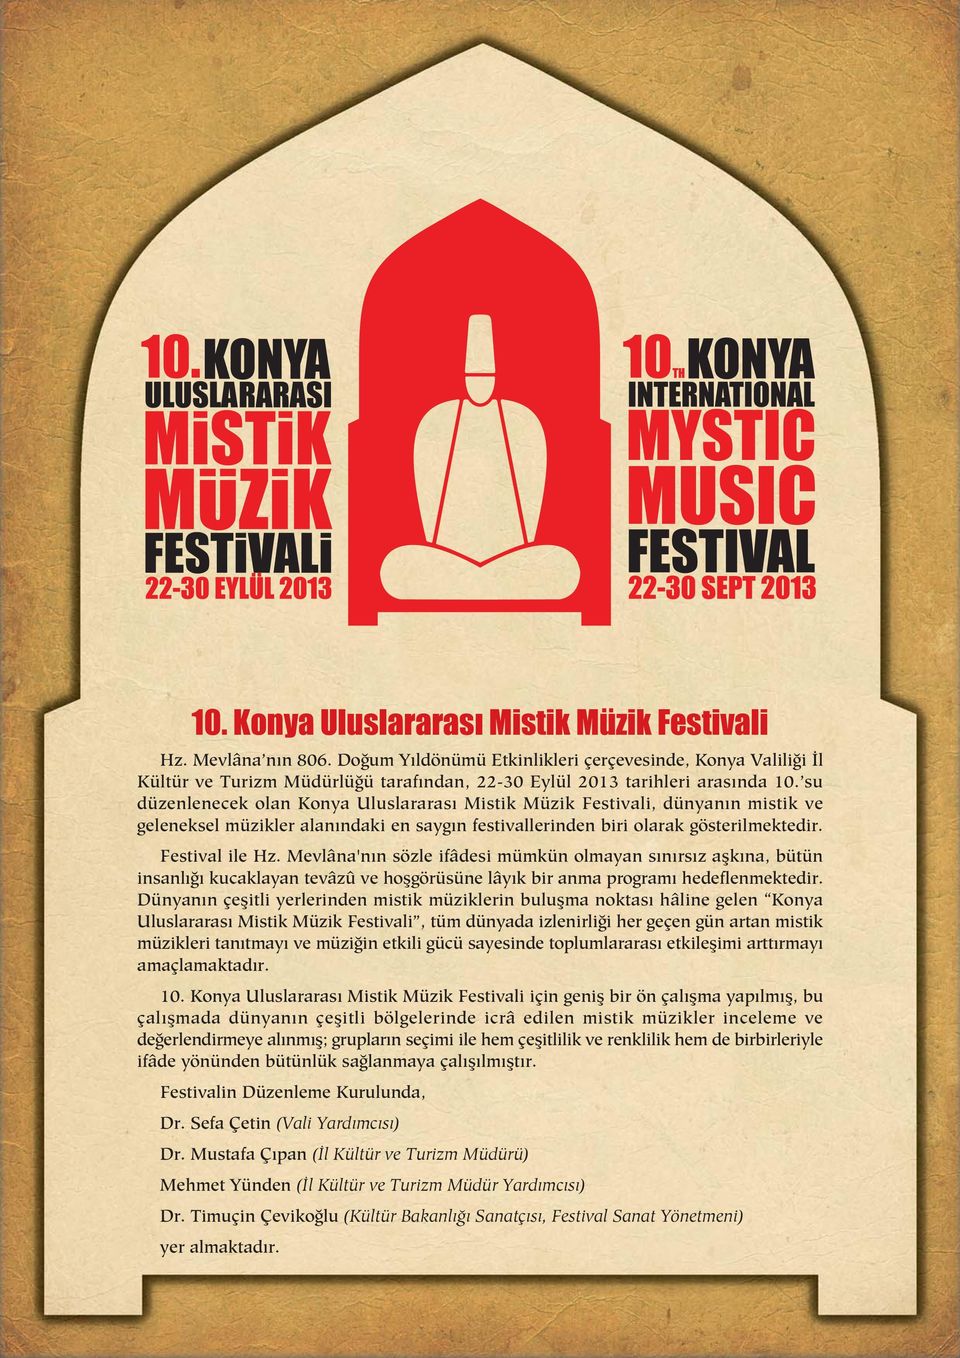 su düzenlenecek olan Konya Uluslararas Mistik Müzik Festivali, dünyan n mistik ve geleneksel müzikler alan ndaki en sayg n festivallerinden biri olarak gösterilmektedir. Festival ile Hz.